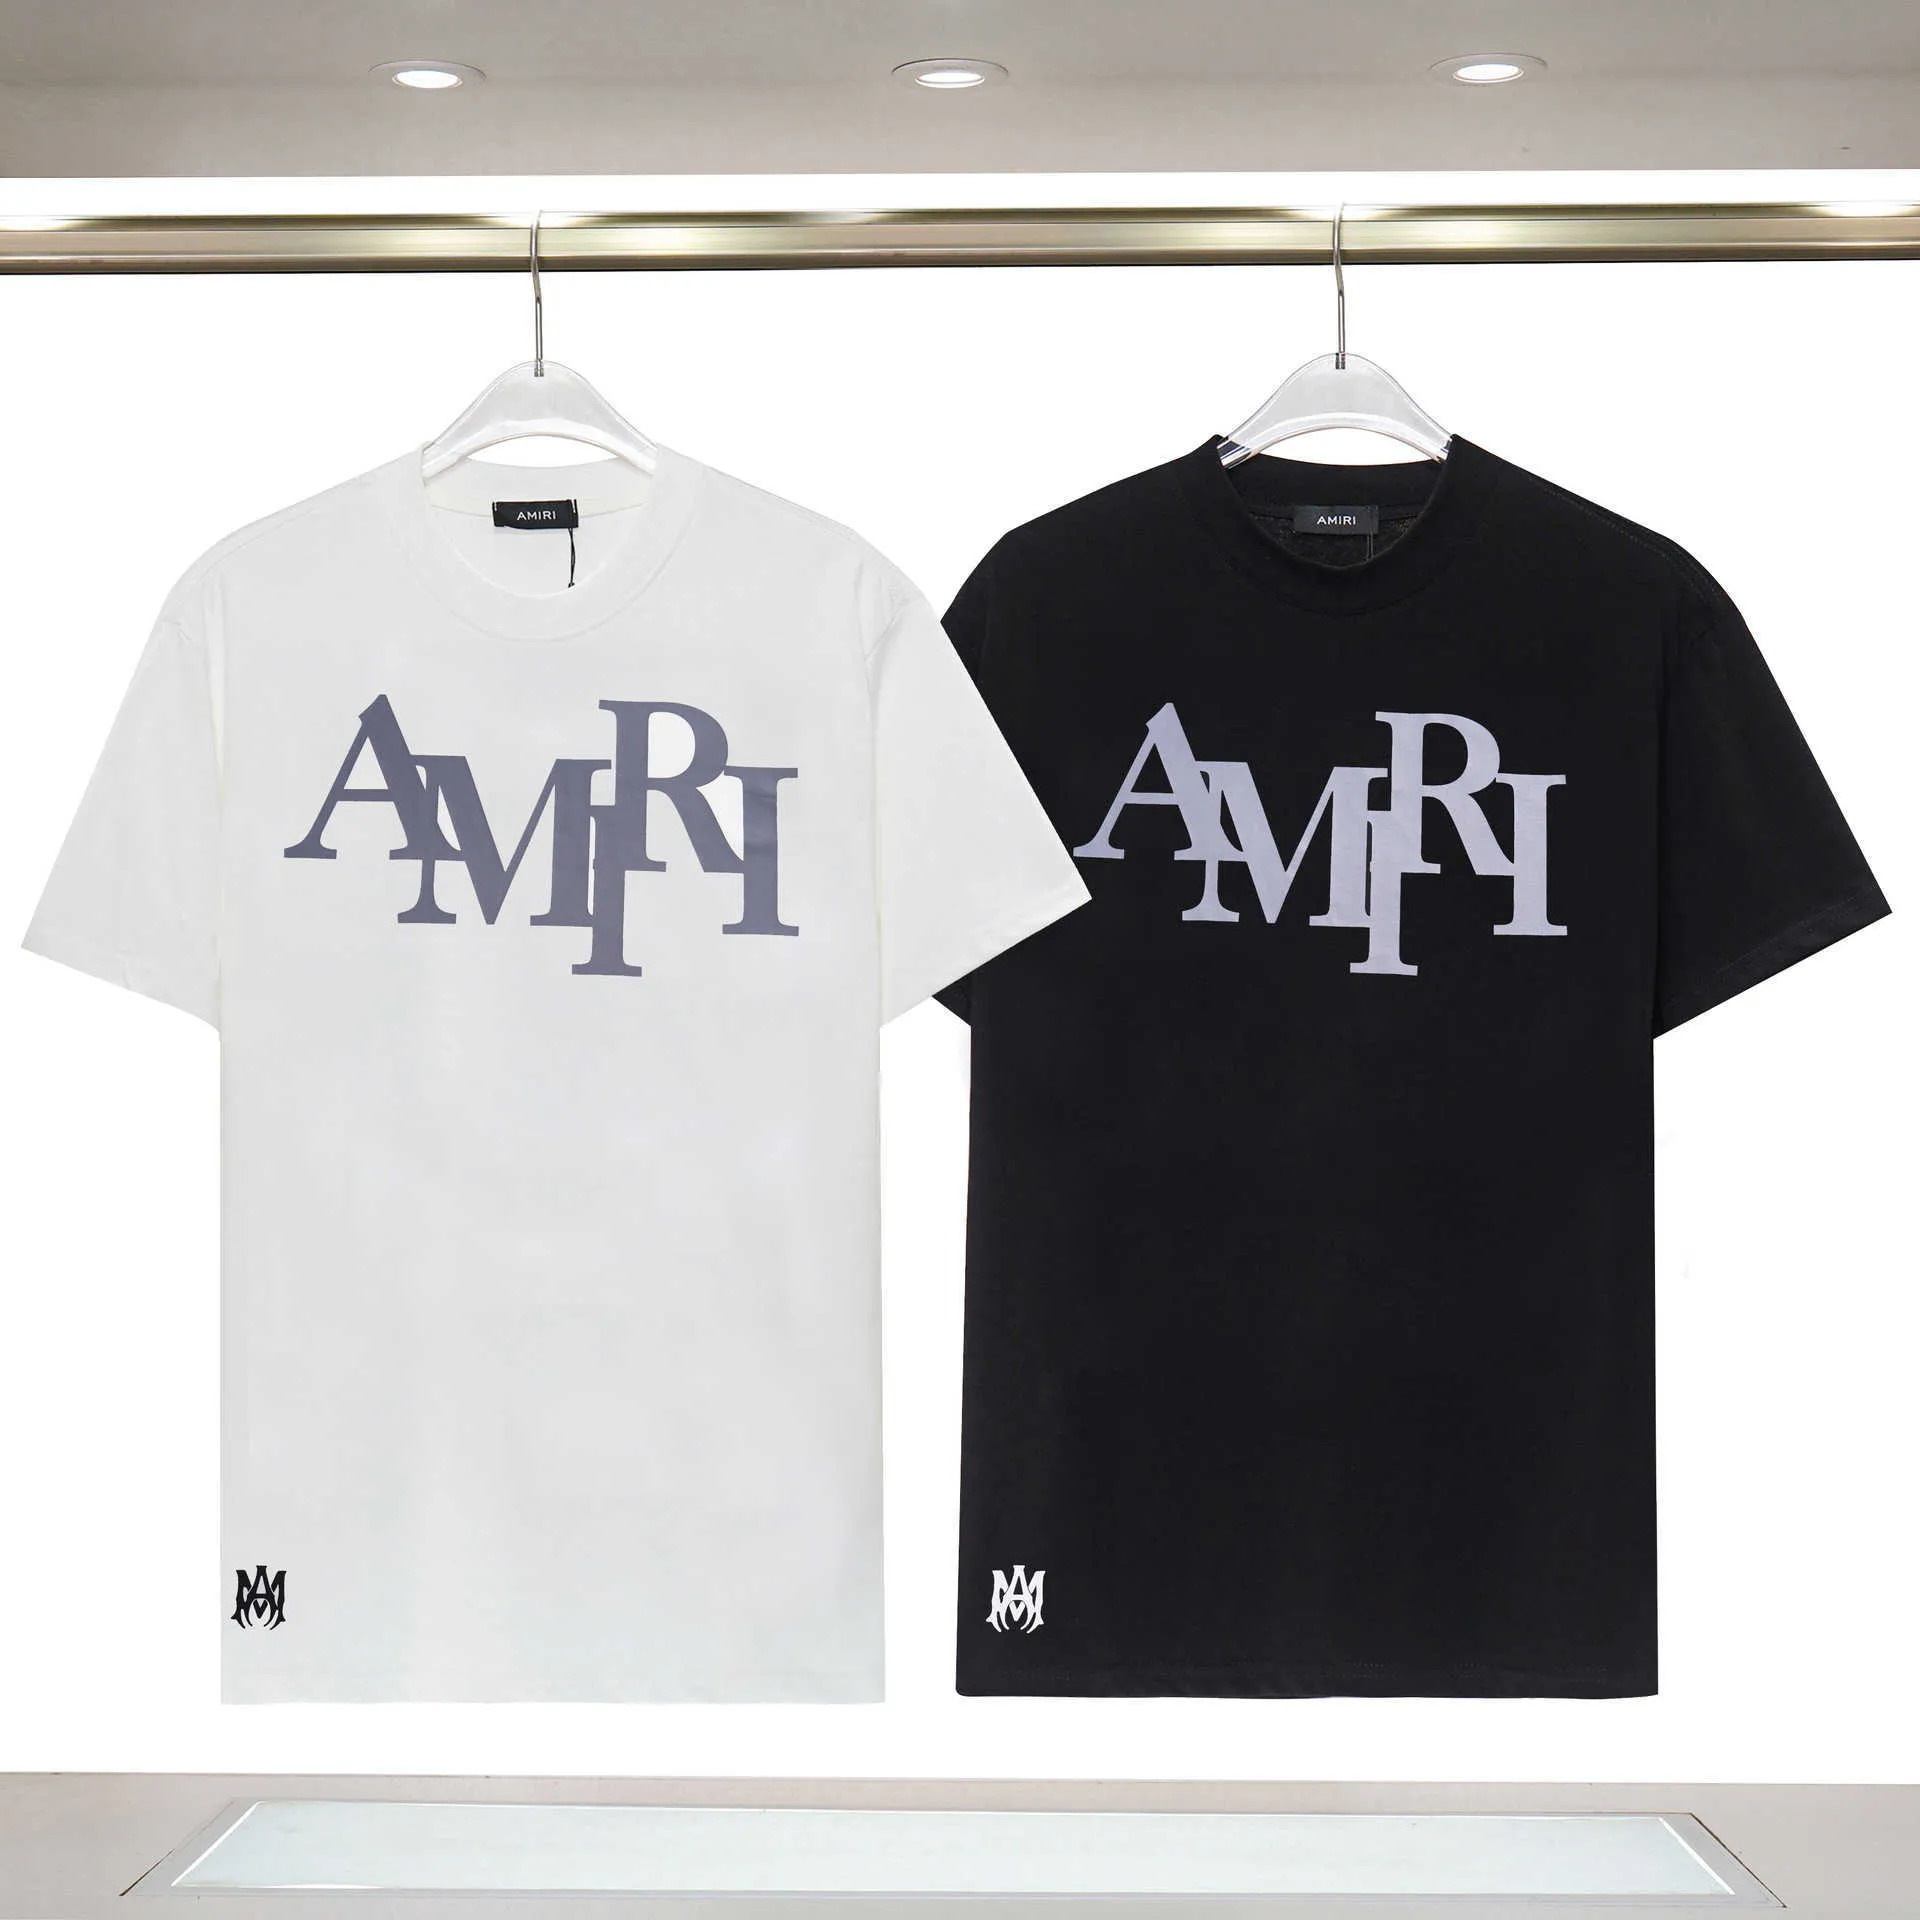 Modemarke Aimiri Reflektierendes Unisex-T-Shirt aus reiner Baumwolle mit doppeltem Garn und reflektierendem Buchstabendruck